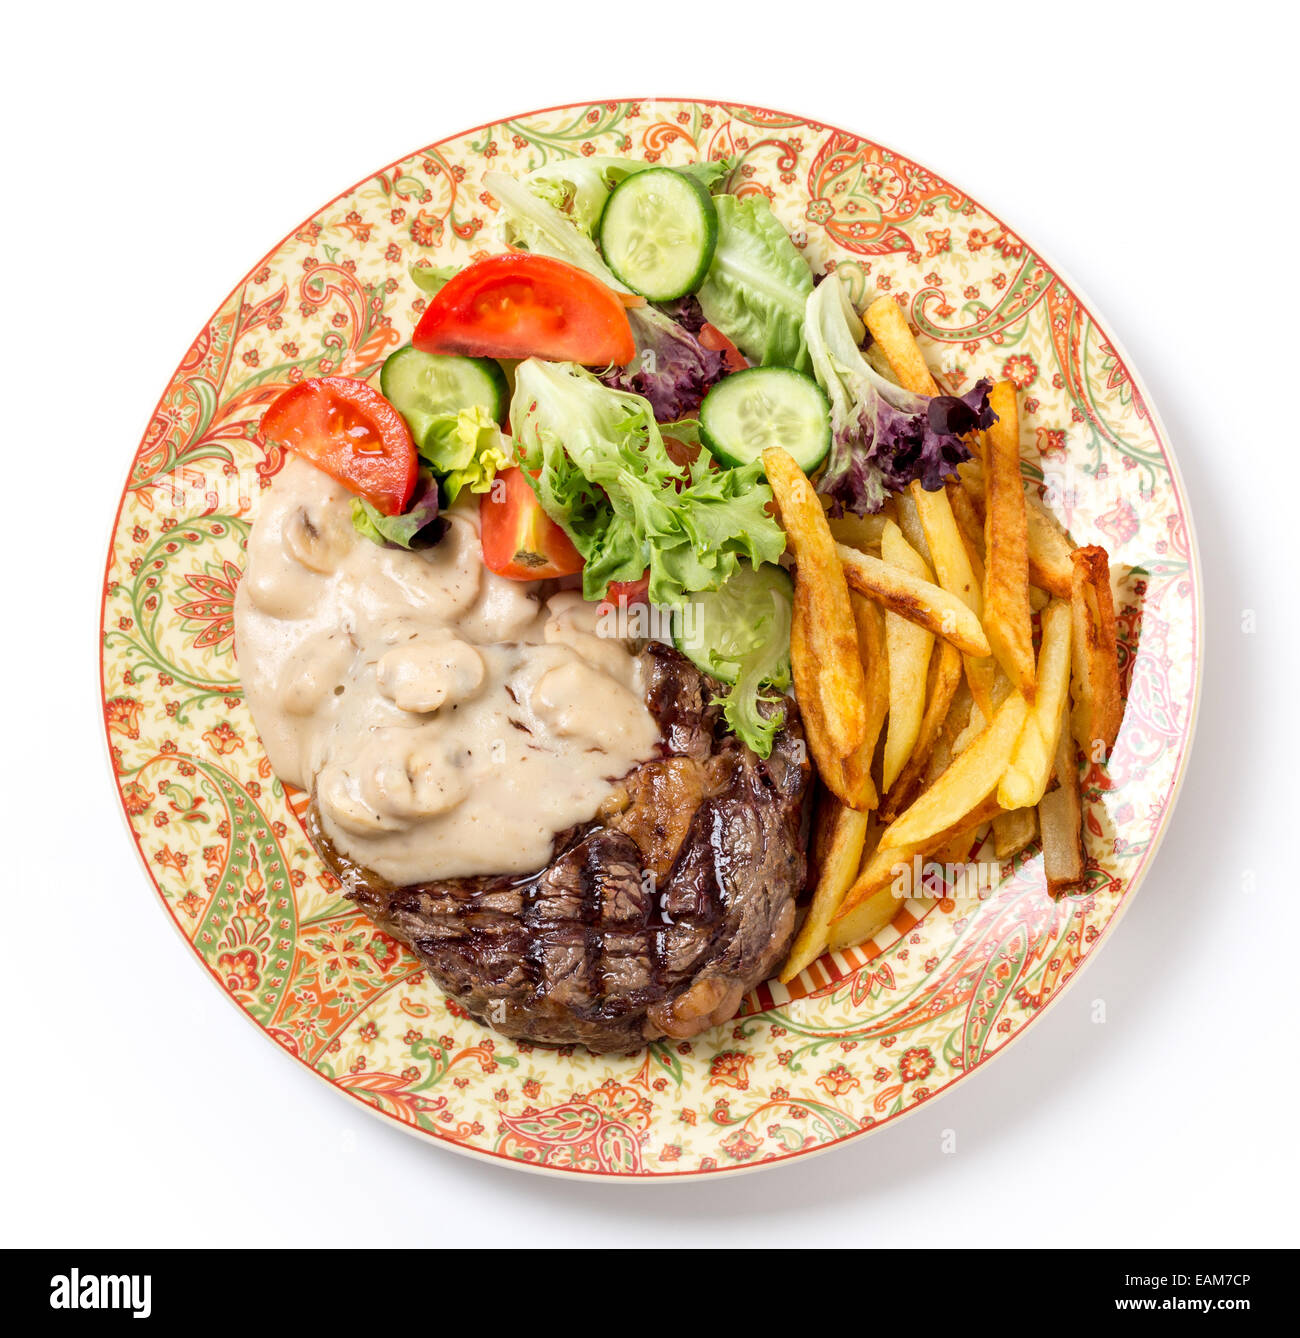 Vue à vol d'oiseau de faux-filet grillé Steak de boeuf servi avec une sauce aux champignons, salade et pommes de terre frites. Banque D'Images